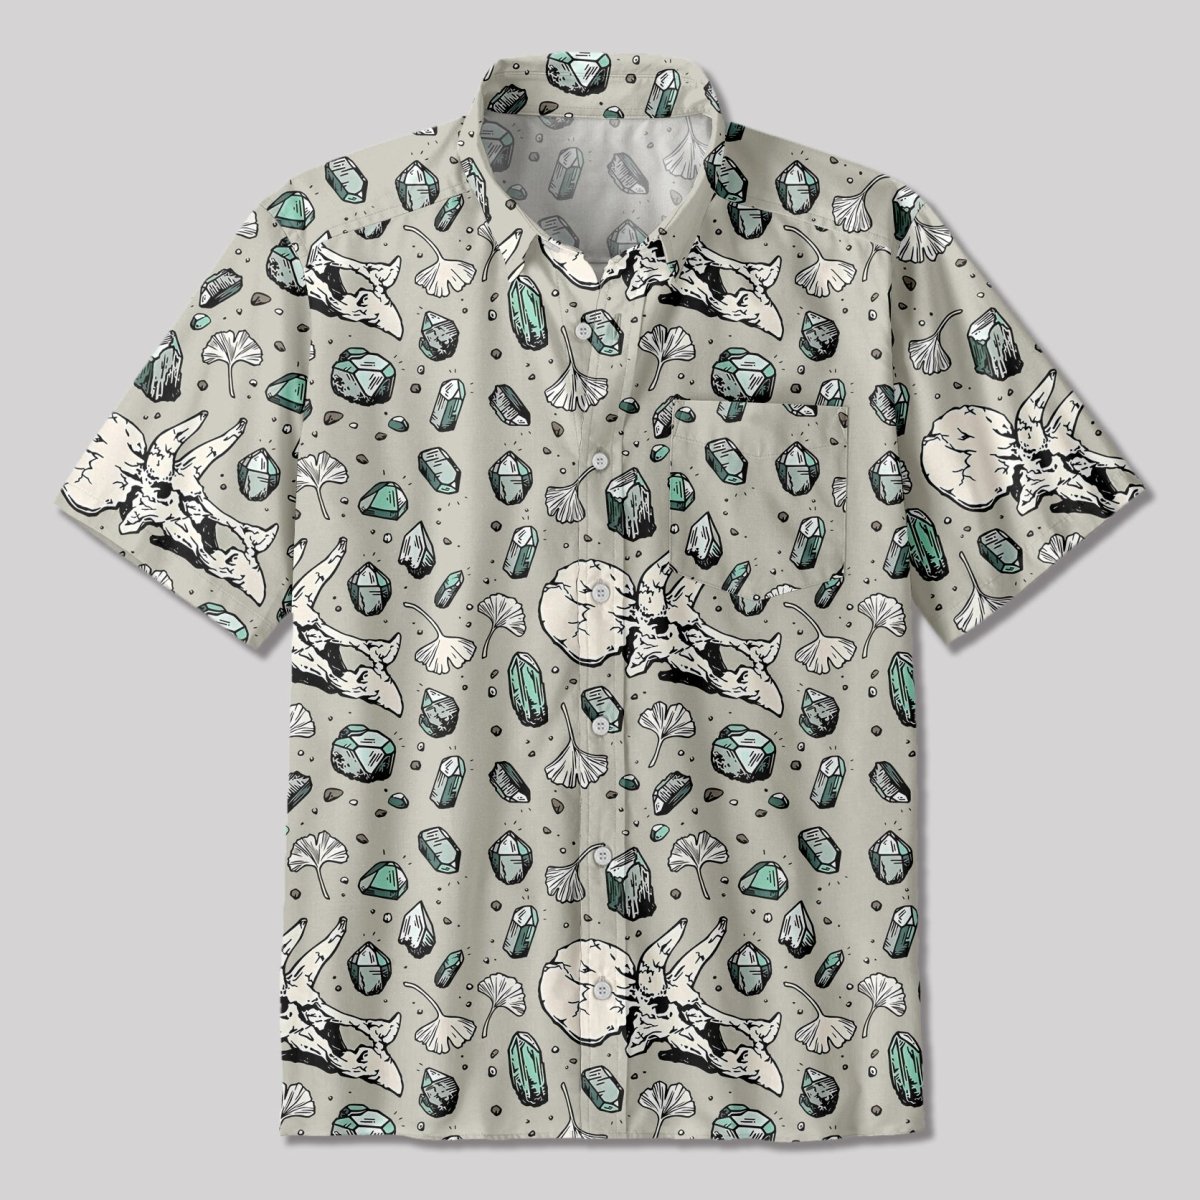 Ancient Dinosaur Fossils Button Up Pocket Shirt - Geeksoutfit